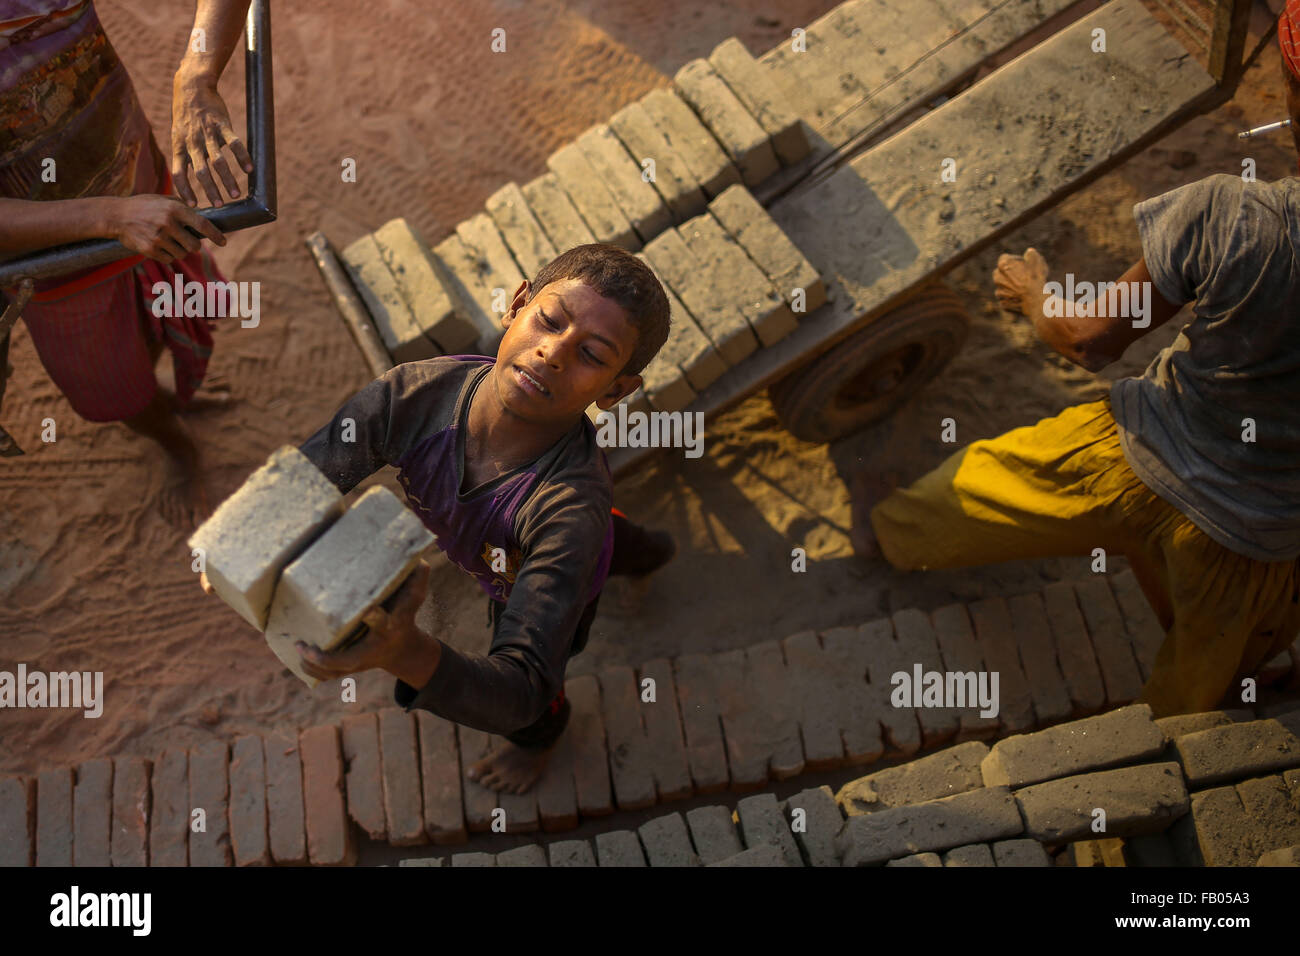 Dhaka, Bangladesh. 23 Nov, 2015. SAGOR est jeune garçon de 12 ans qui travaille dans une cour et la fabrication de briques gagne environ 2,5 USD par jour. Il a terminé la quatrième année à l'école, avant de venir travailler à l'usine de briques. Ses parents travaillent également dans la même cour la fabrication de briques. (Crédit Image : © Mohammad Ponir Hossain/zReportage.com via ZUMA Press) Banque D'Images